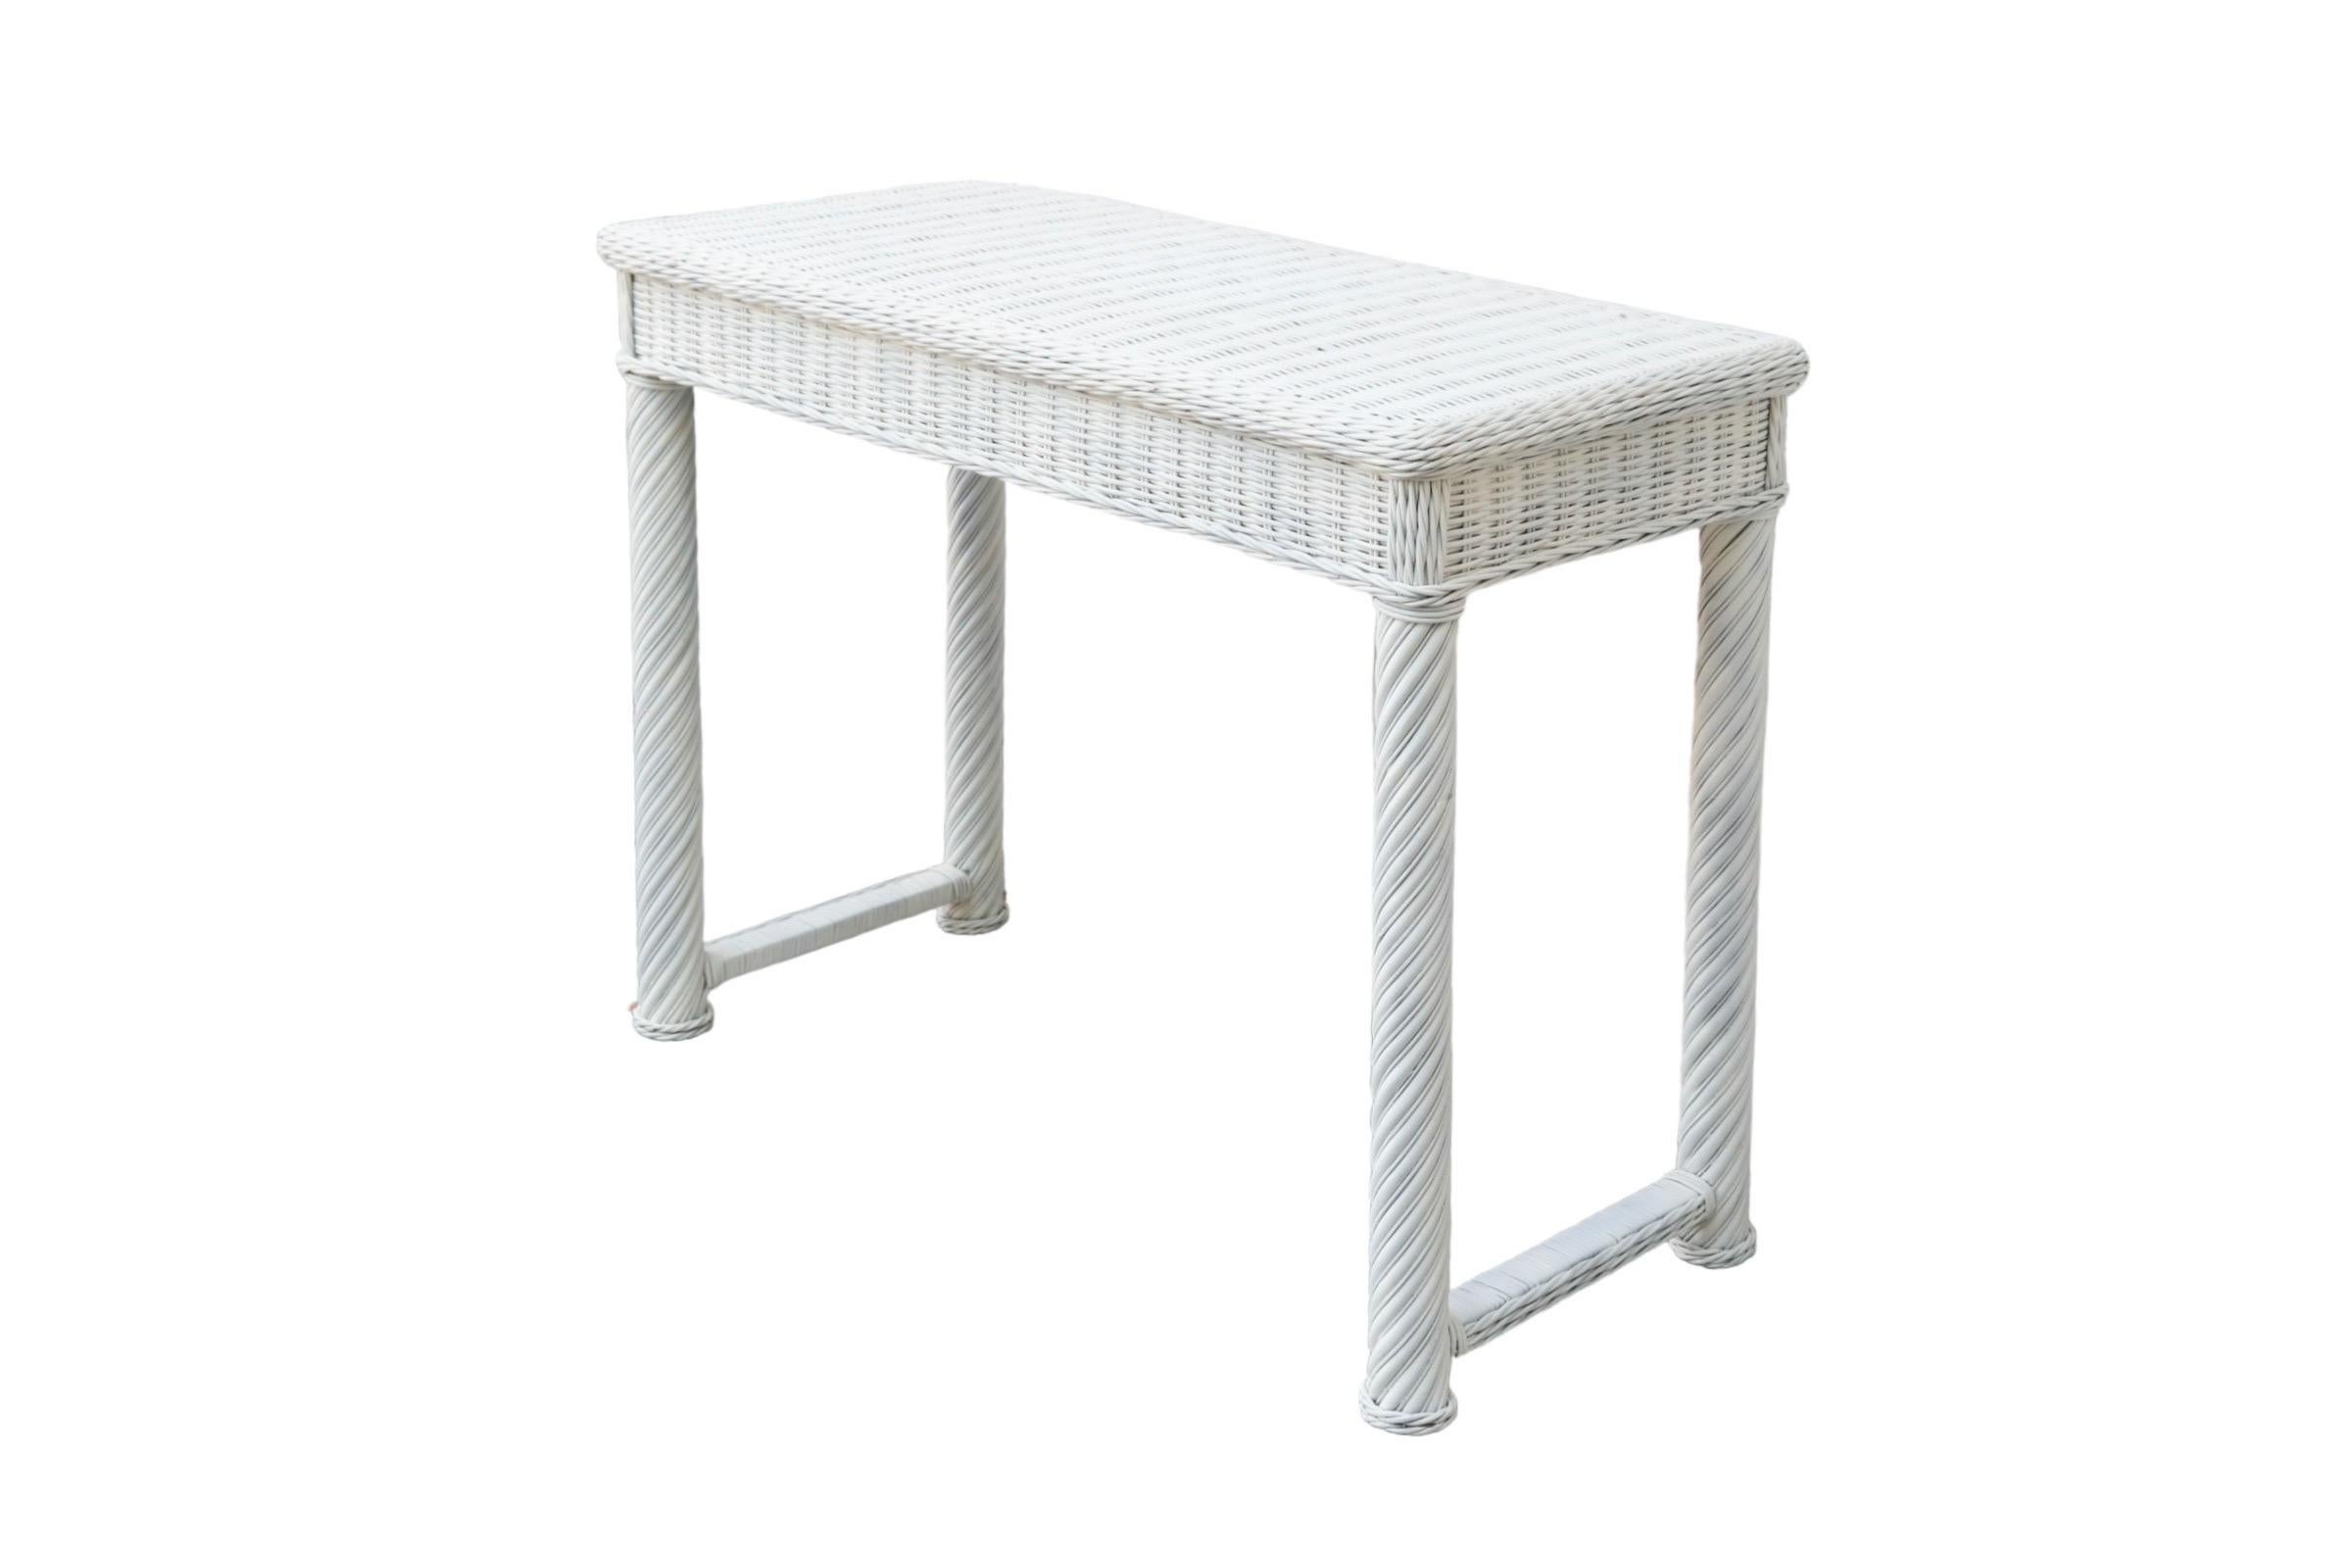 Une table de hall en rotin tressé en osier blanc. Le plateau de la table est encadré d'un bord tressé, et les pieds en bois et les traverses à chaque extrémité sont enveloppés de rotin. Peint en blanc sur toute la surface.